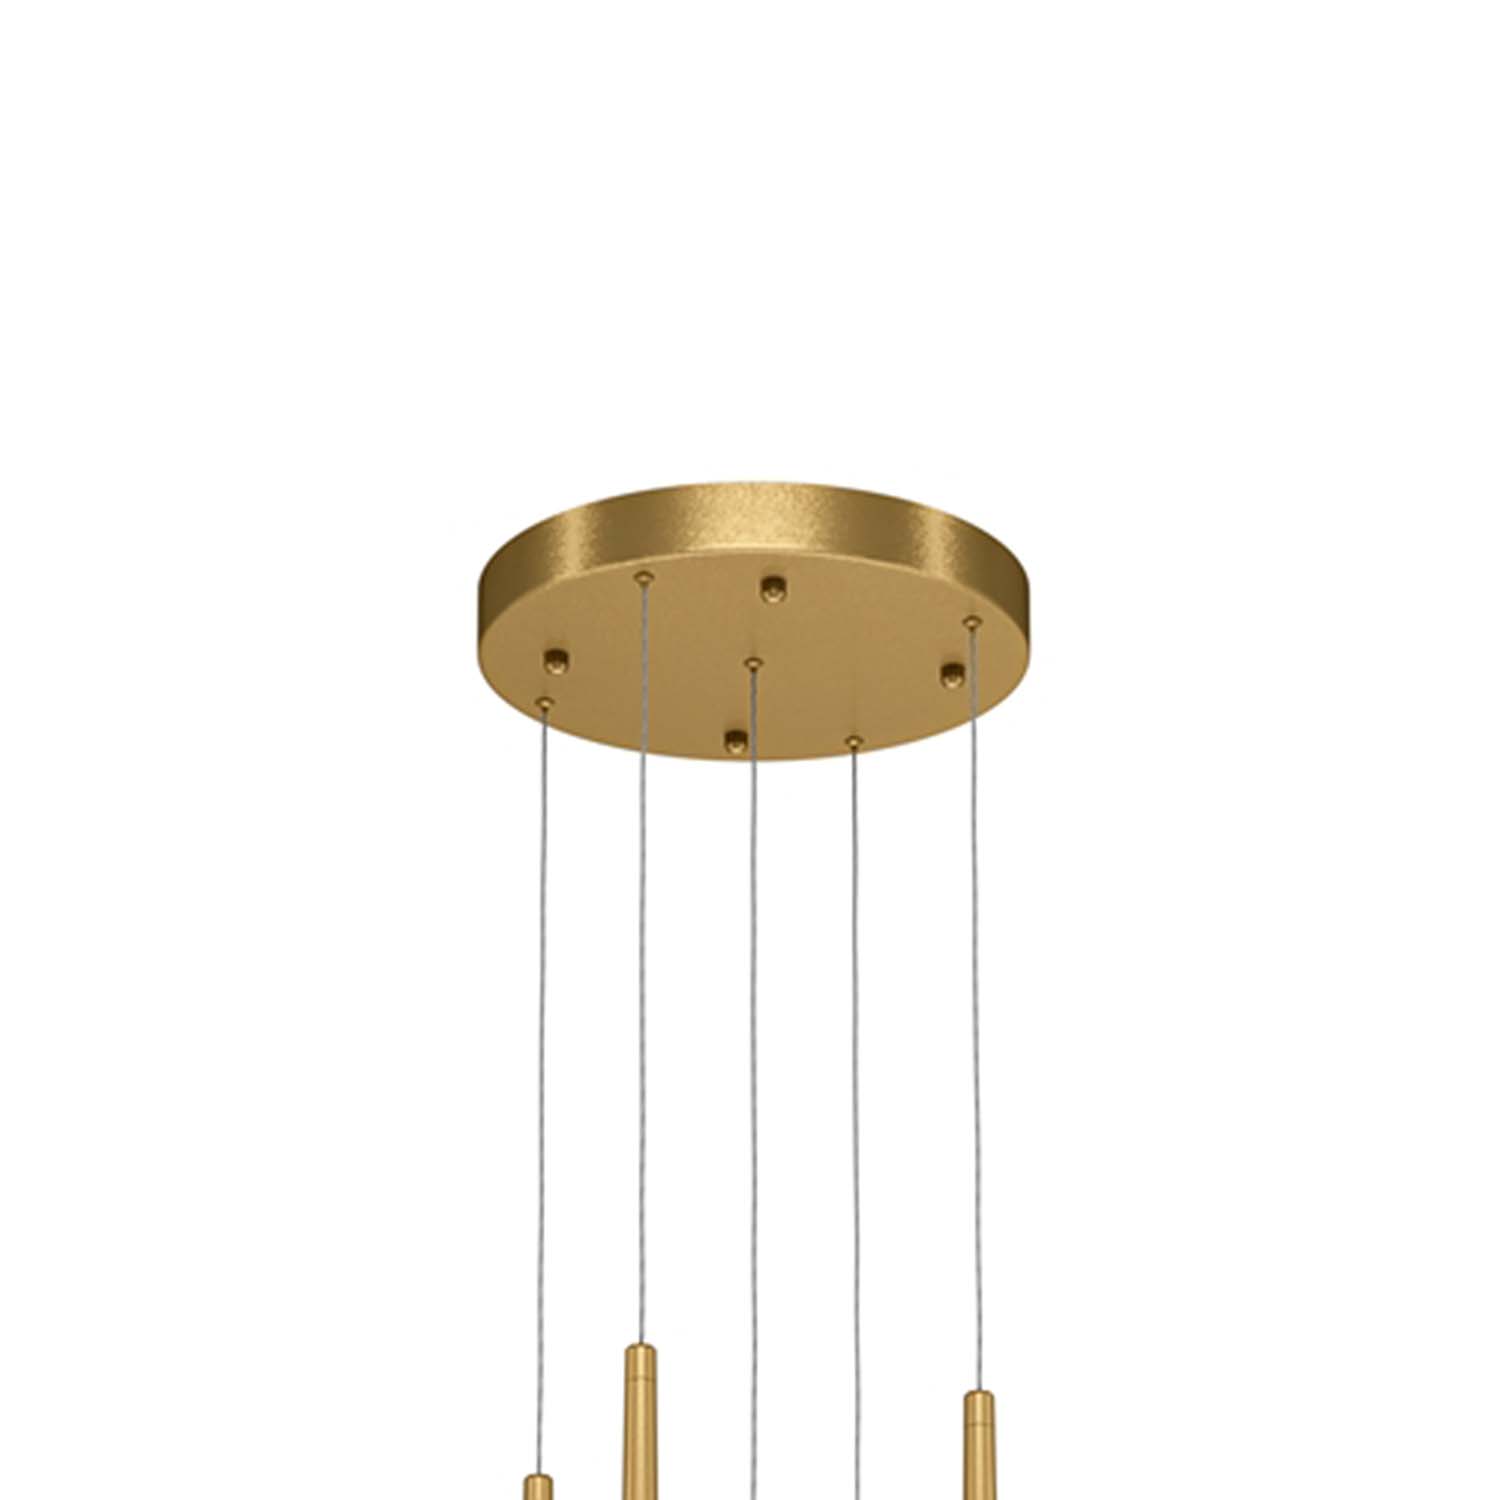 CASCADE - Composite pendant light for high ceilings